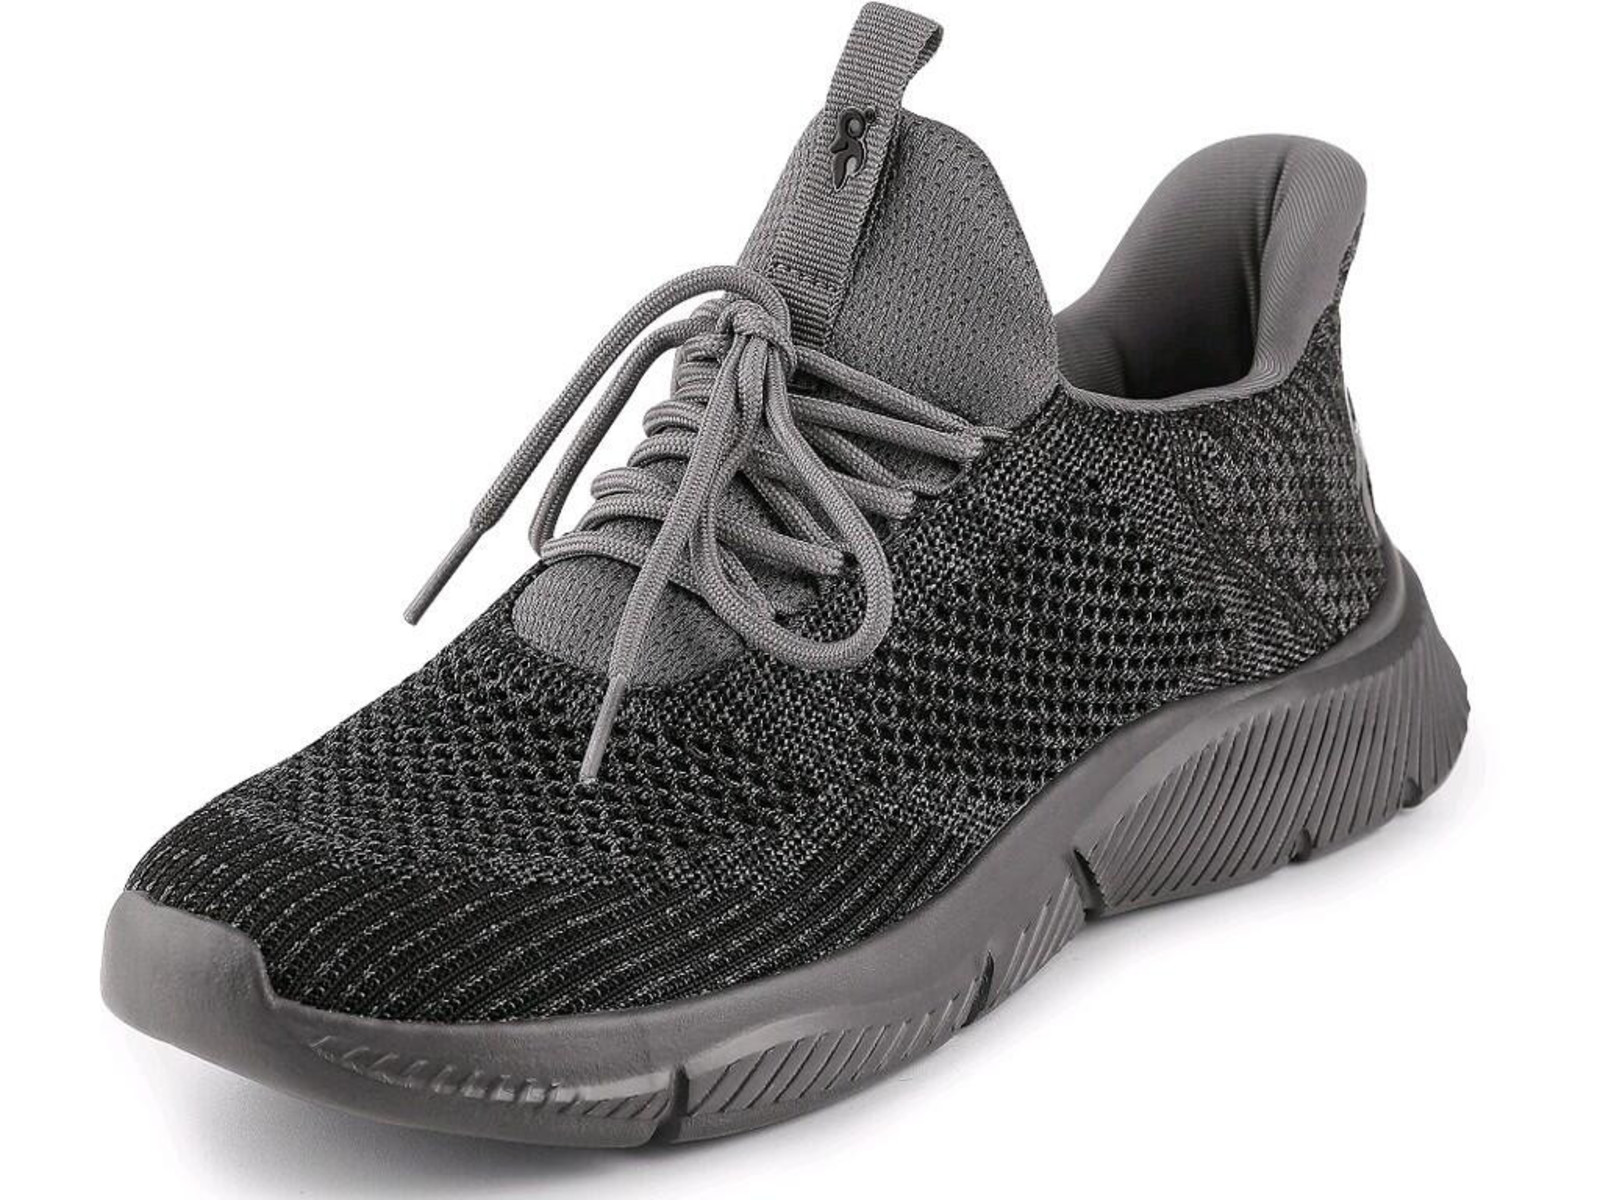 Voľnočasová obuv CXS Island Barbados - veľkosť: 36, farba: sivá/čierna